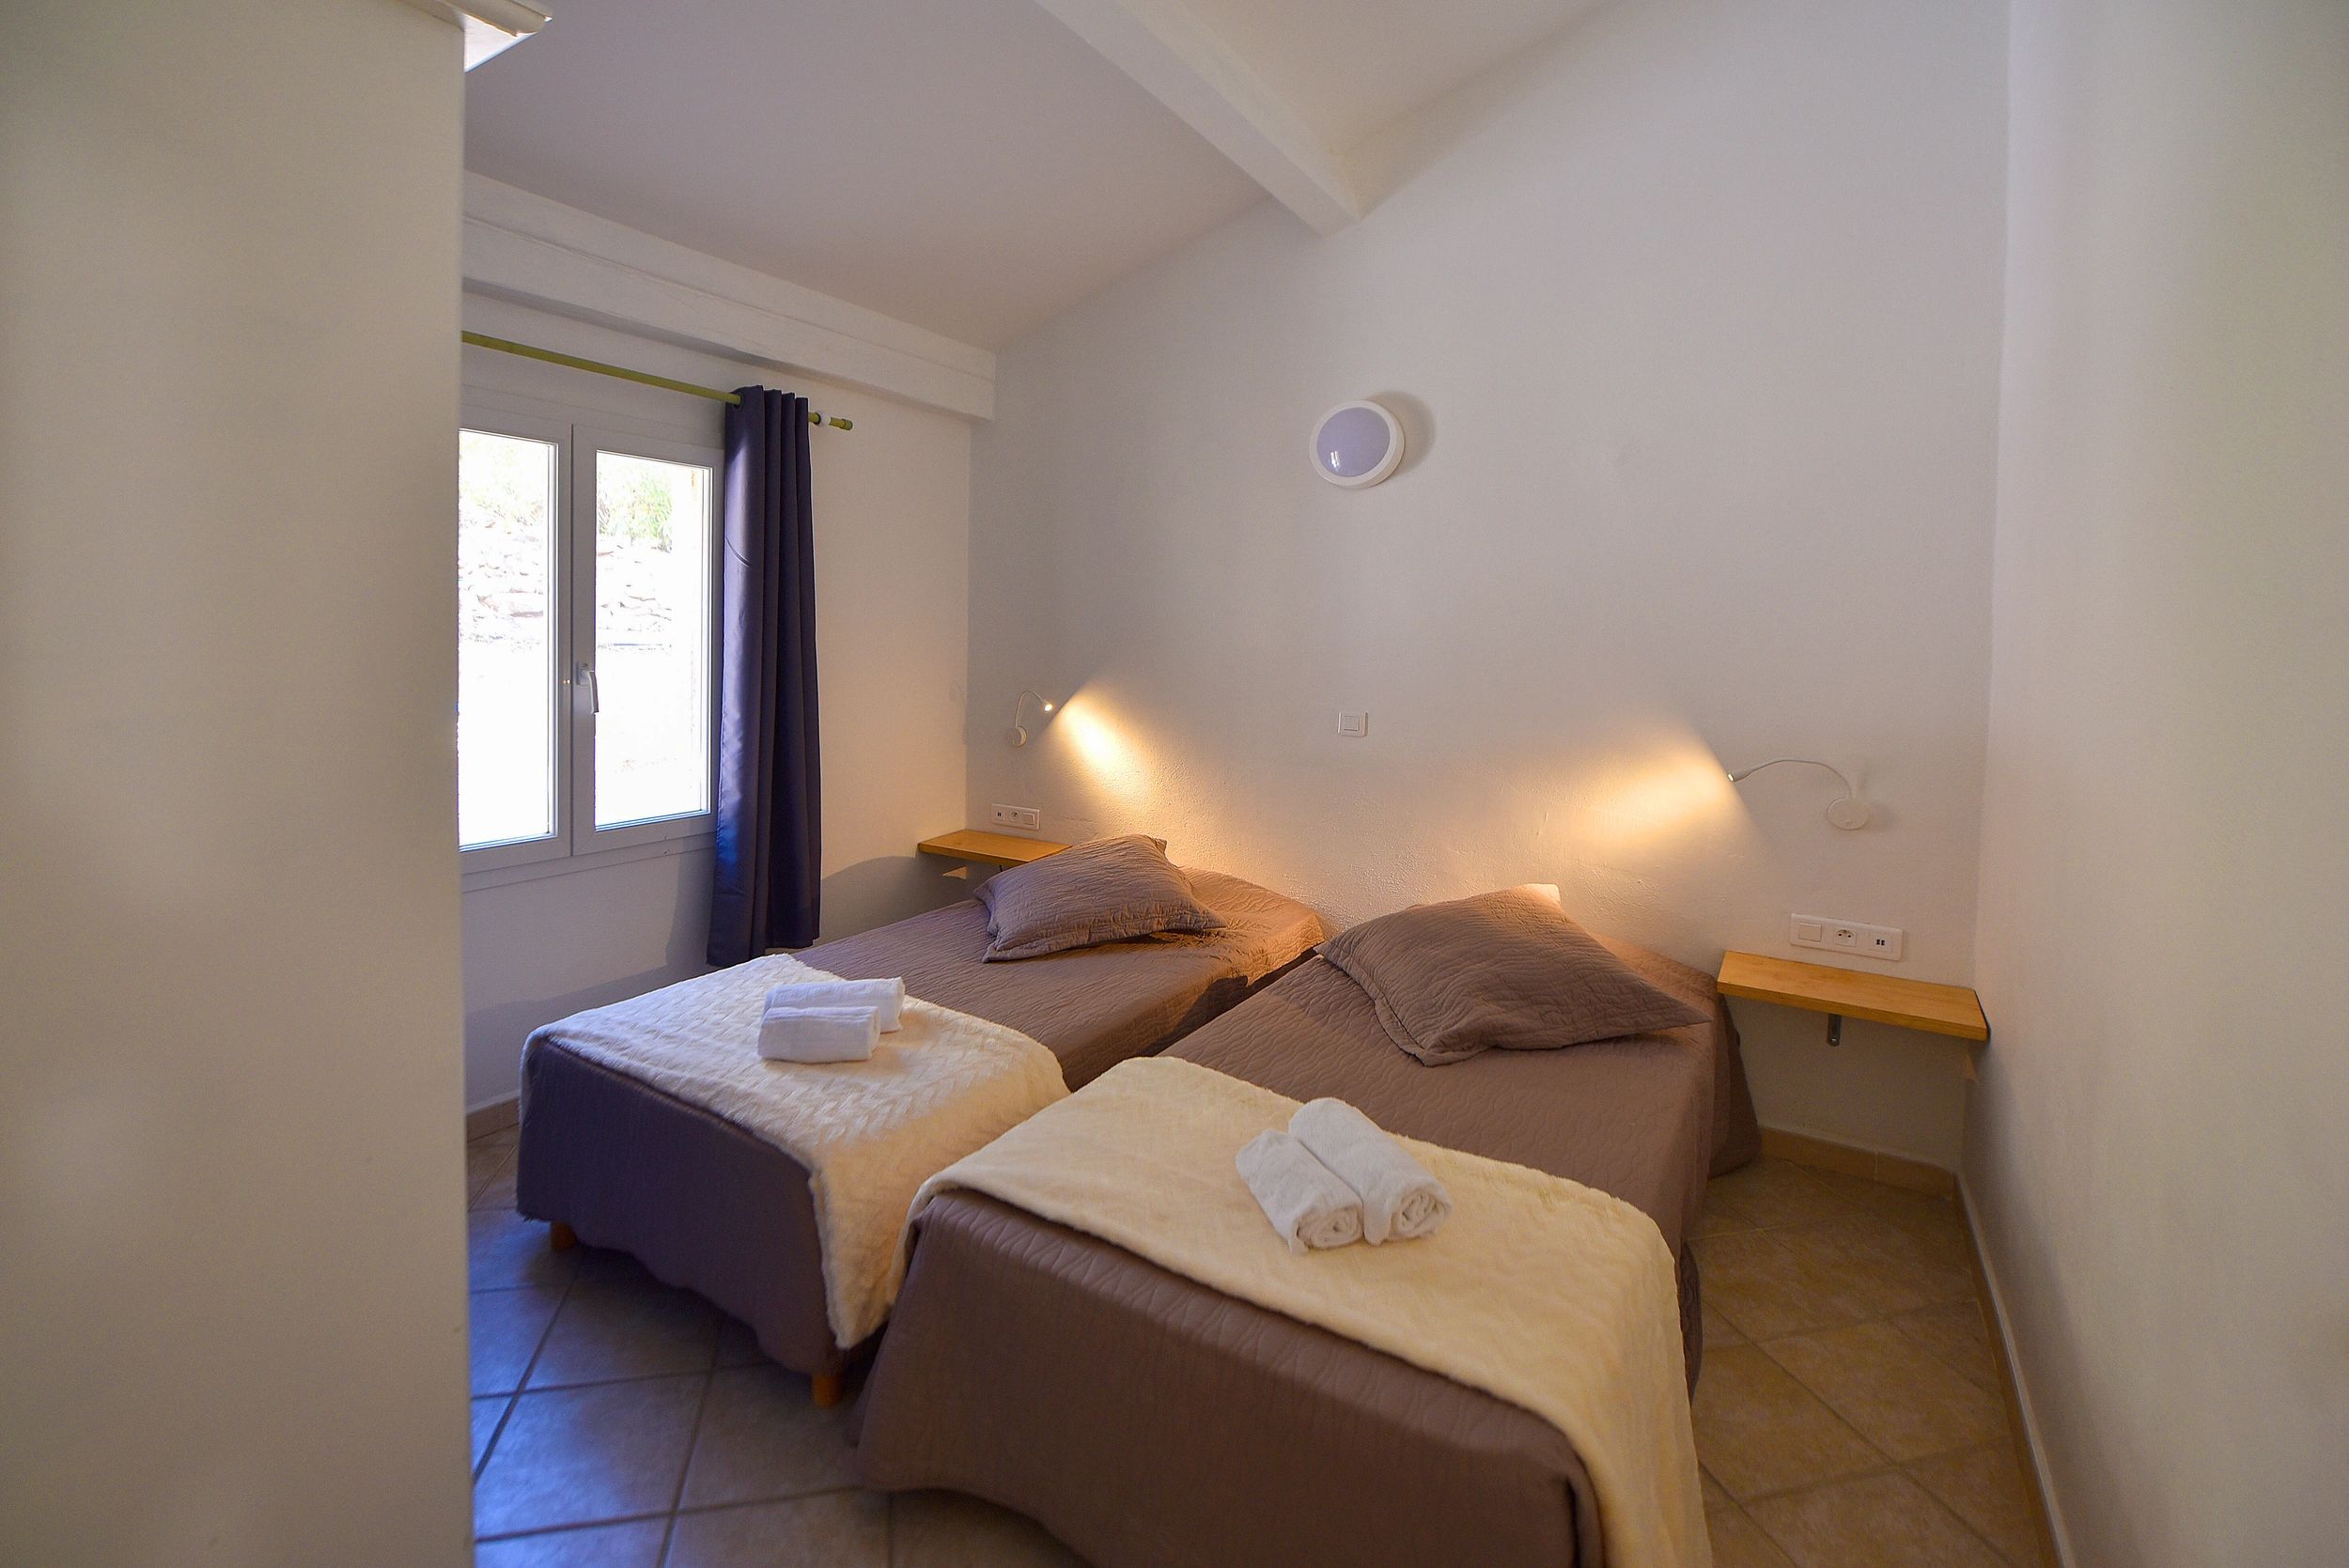 Villa for 4 people in Porto-Vecchio with children's bedroom